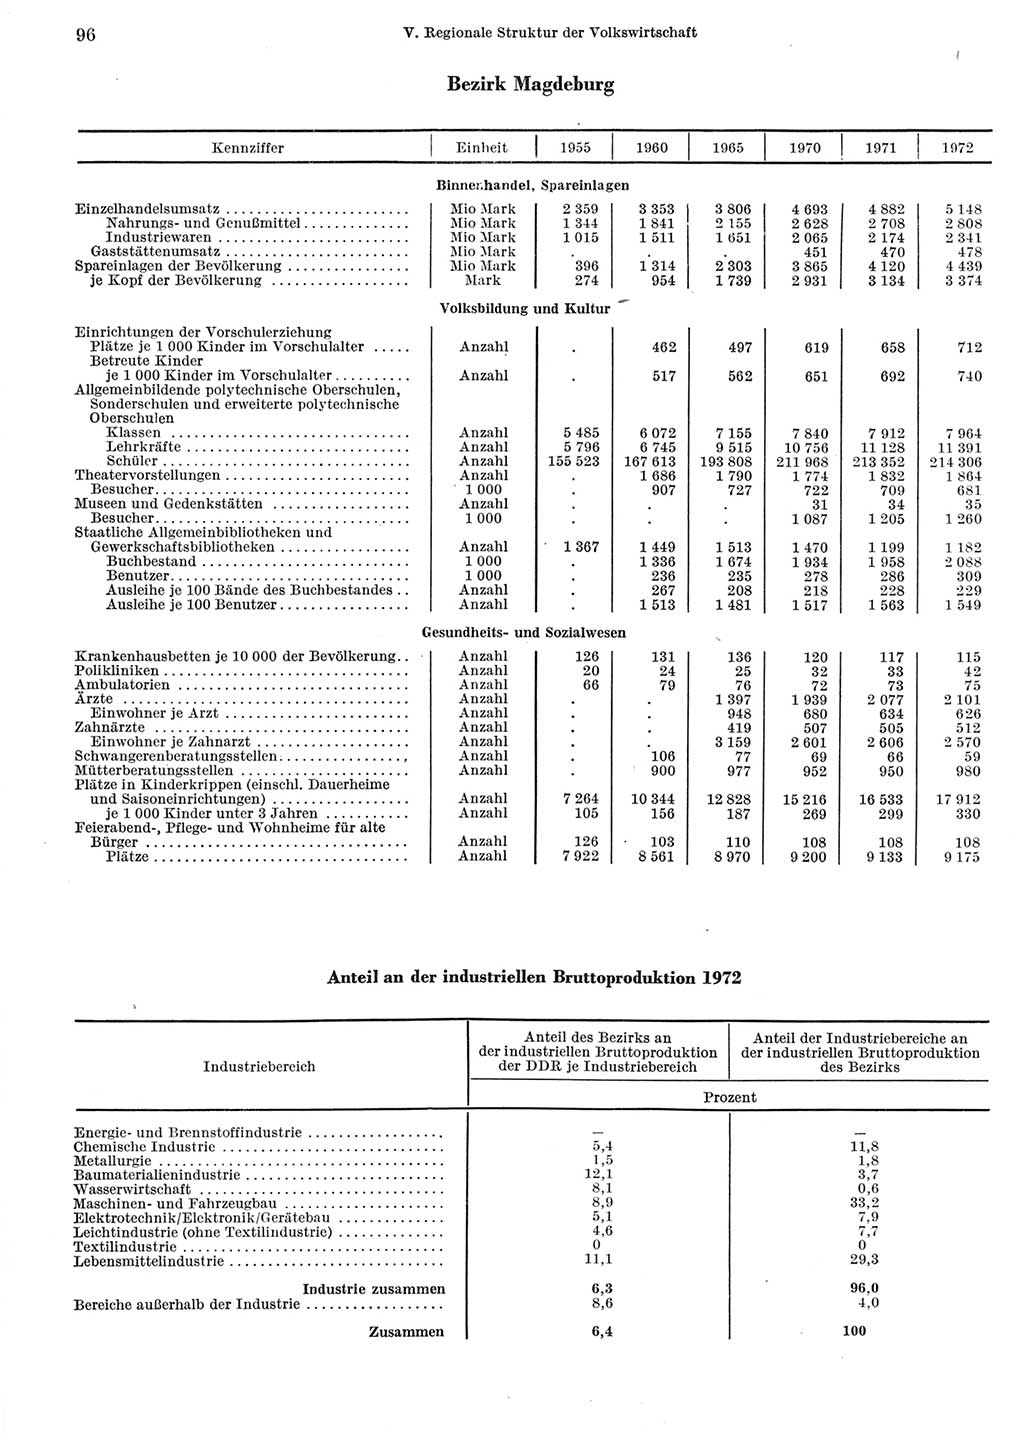 Statistisches Jahrbuch der Deutschen Demokratischen Republik (DDR) 1973, Seite 96 (Stat. Jb. DDR 1973, S. 96)